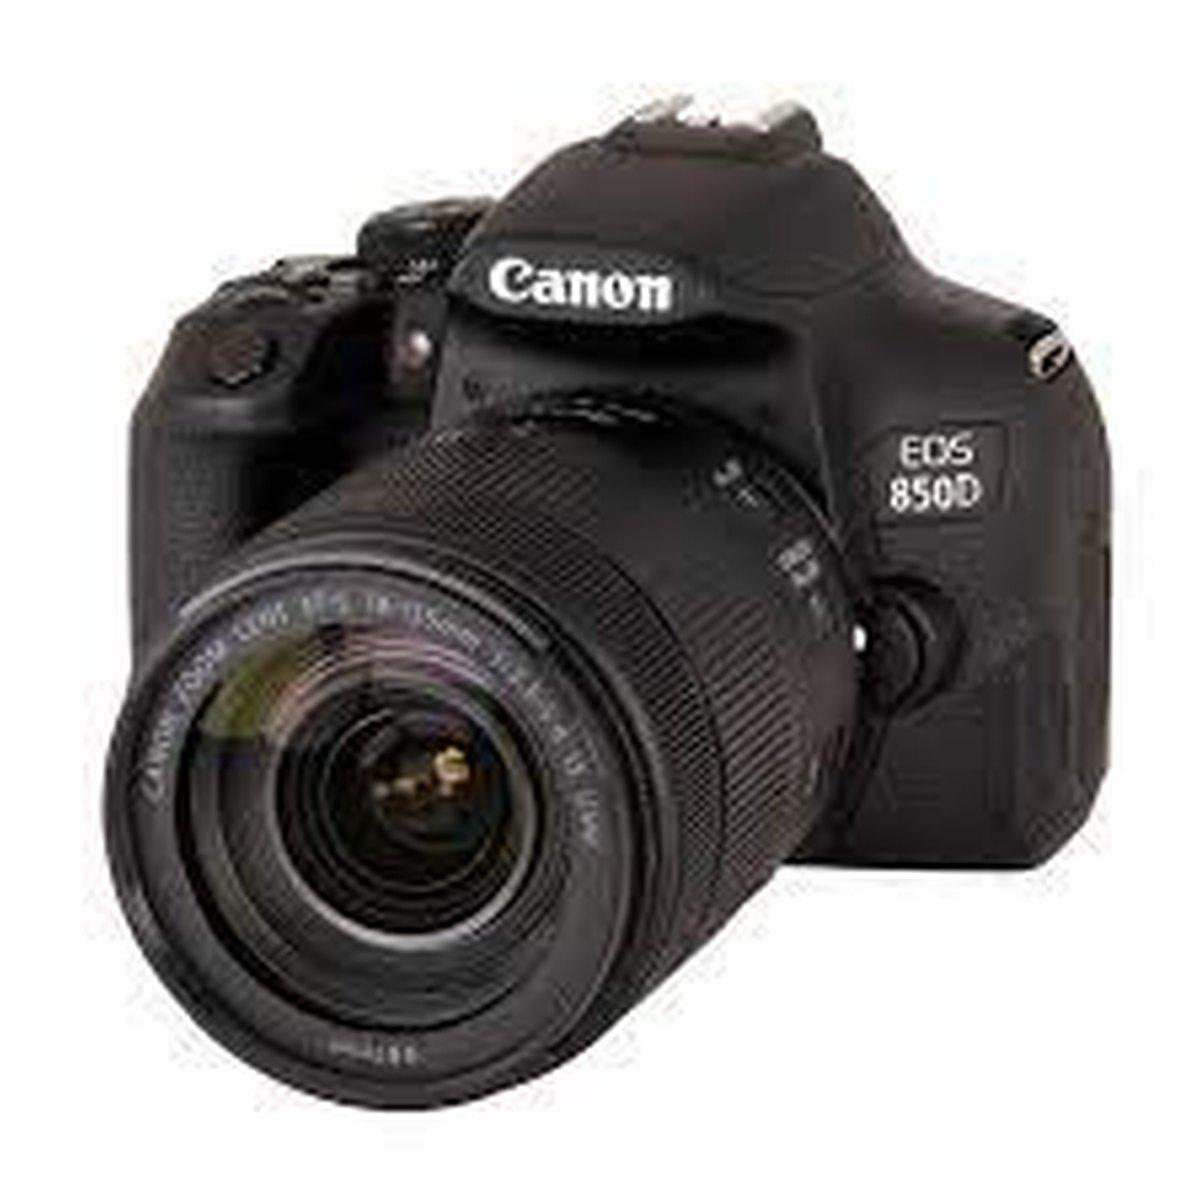 Canon Eos 850d 18-135mm F/3,5-5.6 Is Usm - Fotocamera Reflex Aps-c - Garanzia CANON Italia